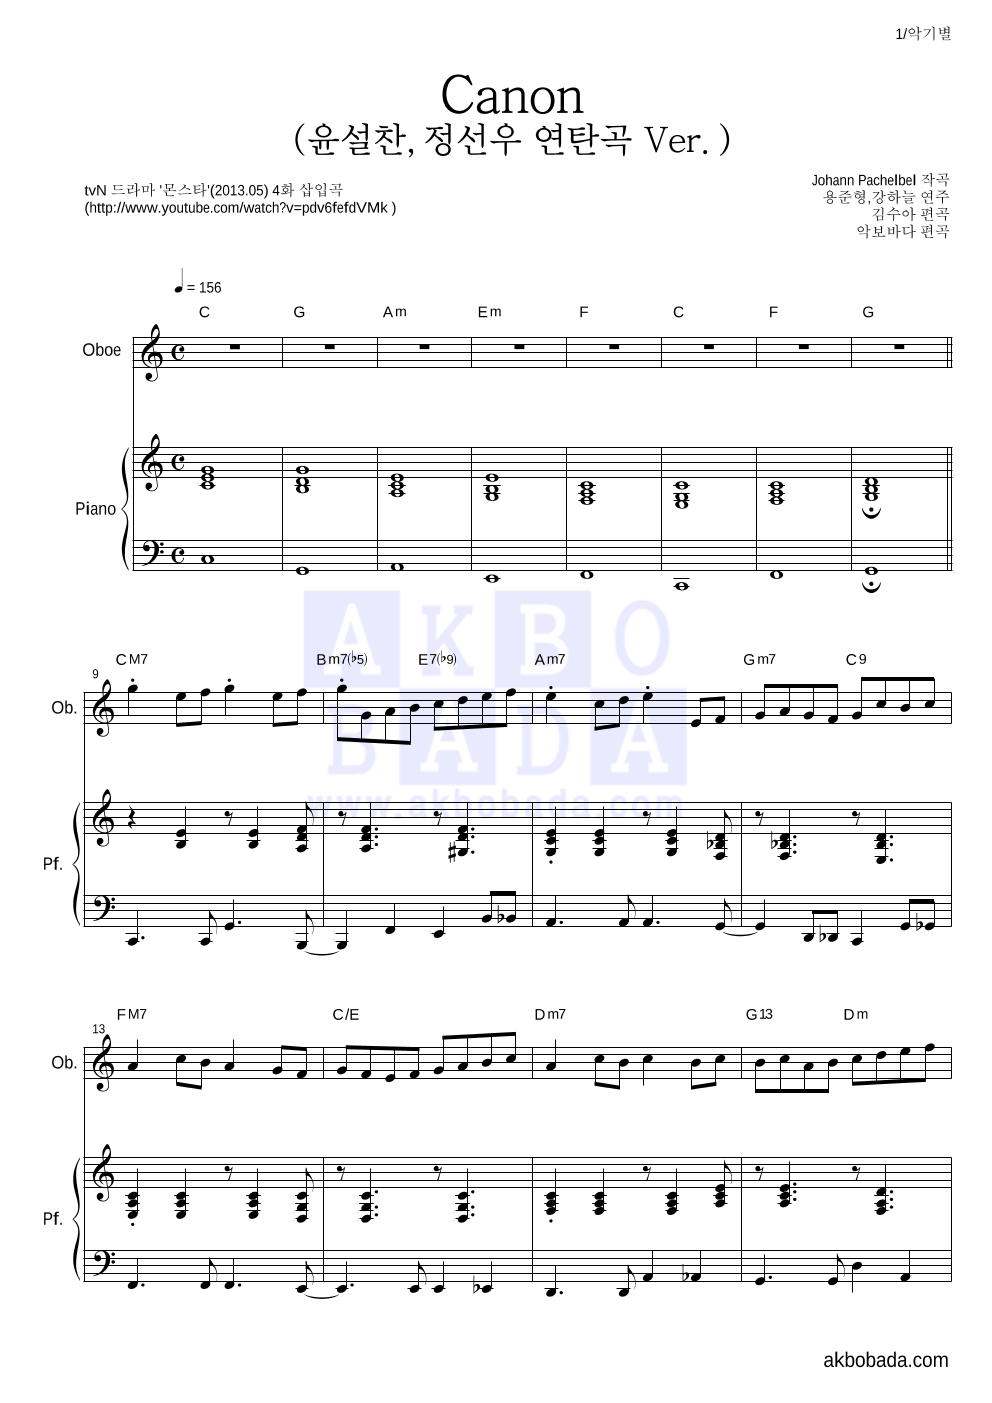 용준형,강하늘 - Canon (윤설찬,정선우 연탄곡 Ver.) 오보에&피아노 악보 